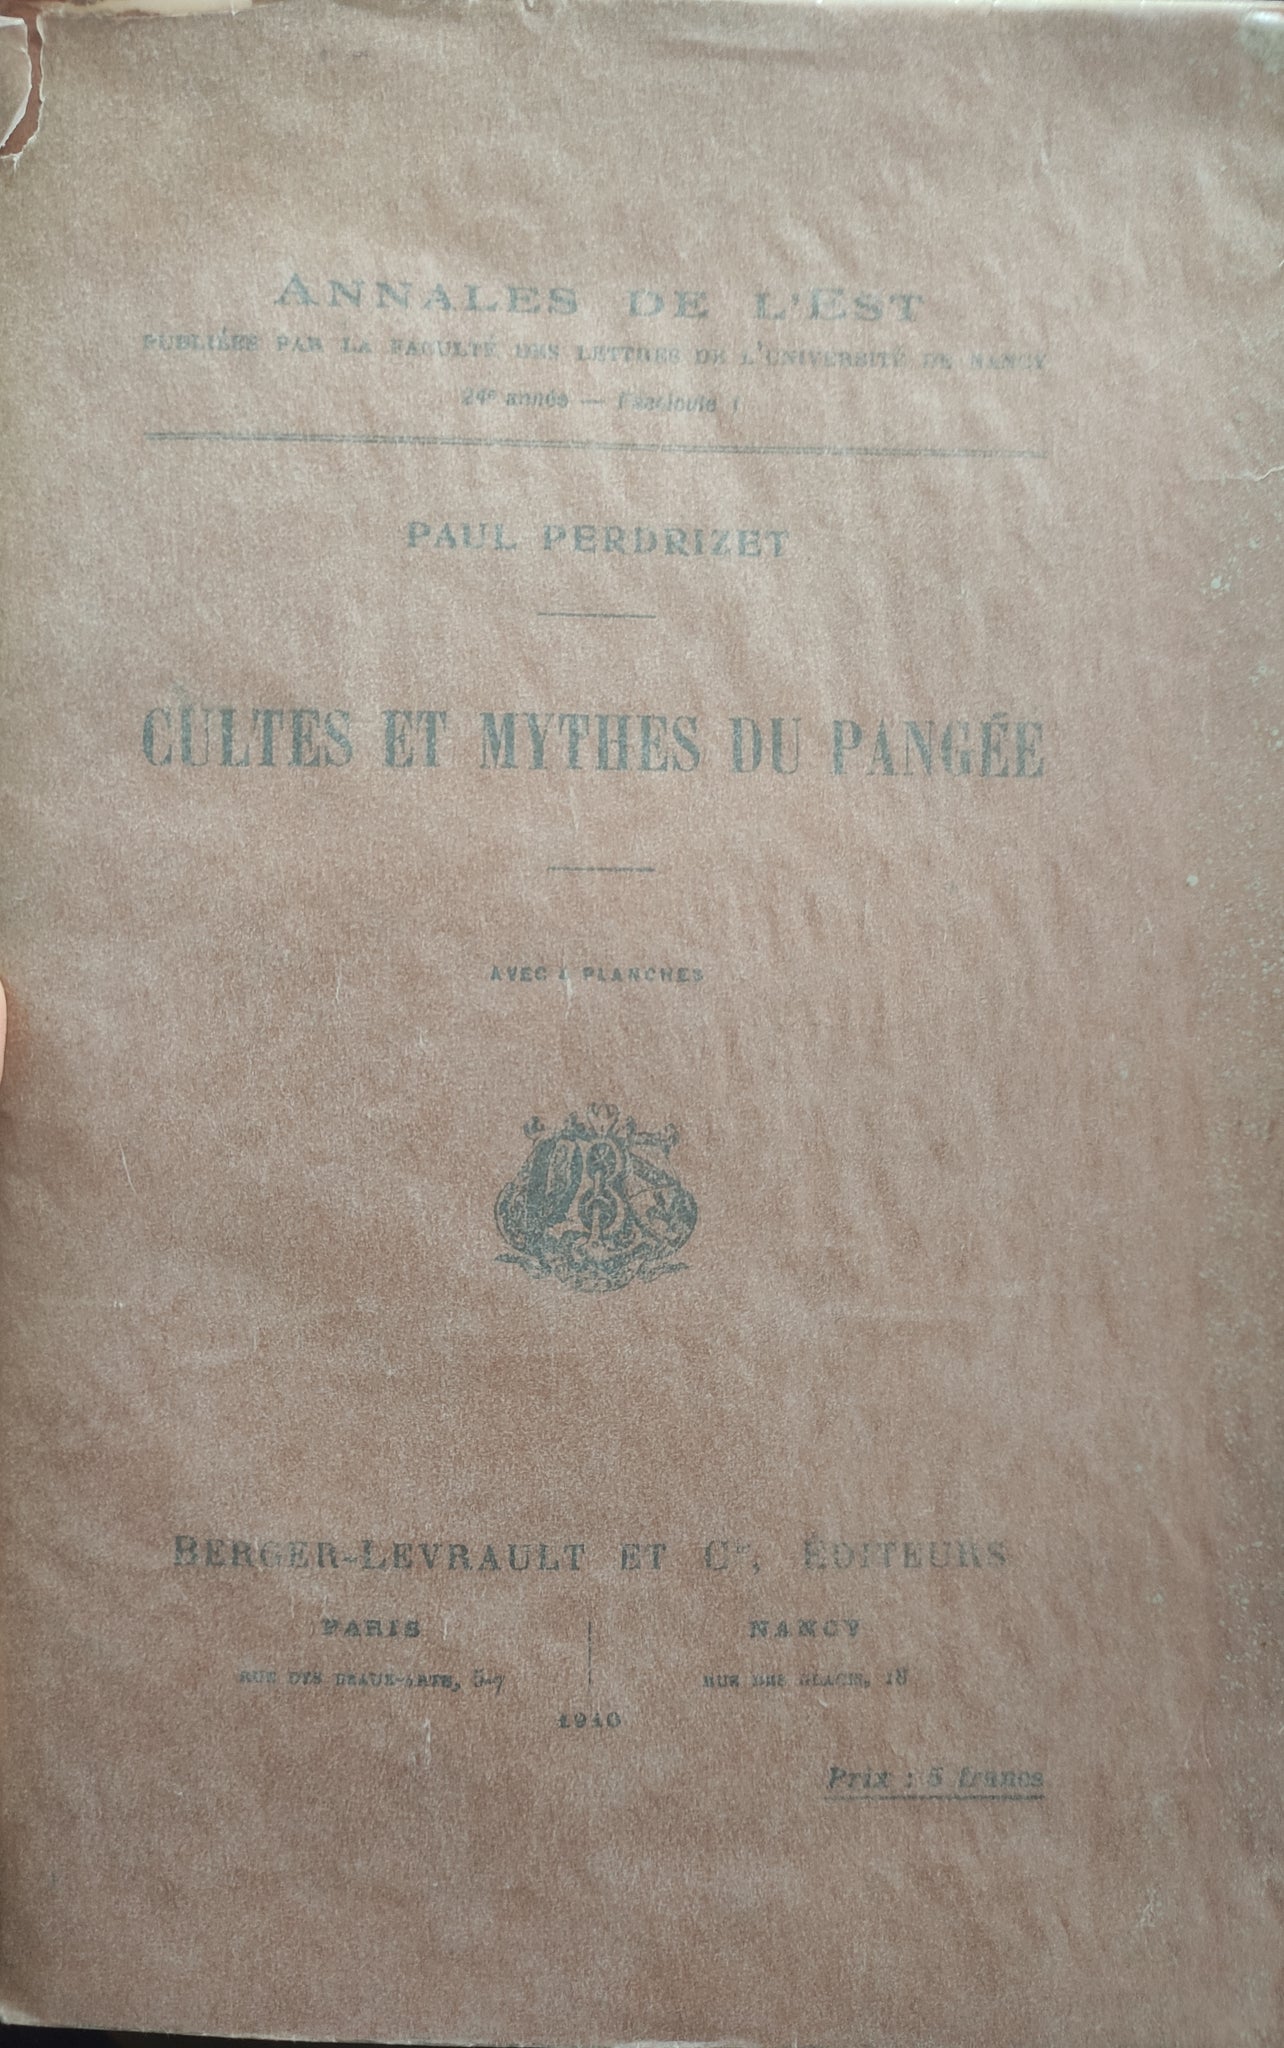 Cultes et mythes du Pangée: Annales de l'Est. 24e année, fascicule 1.